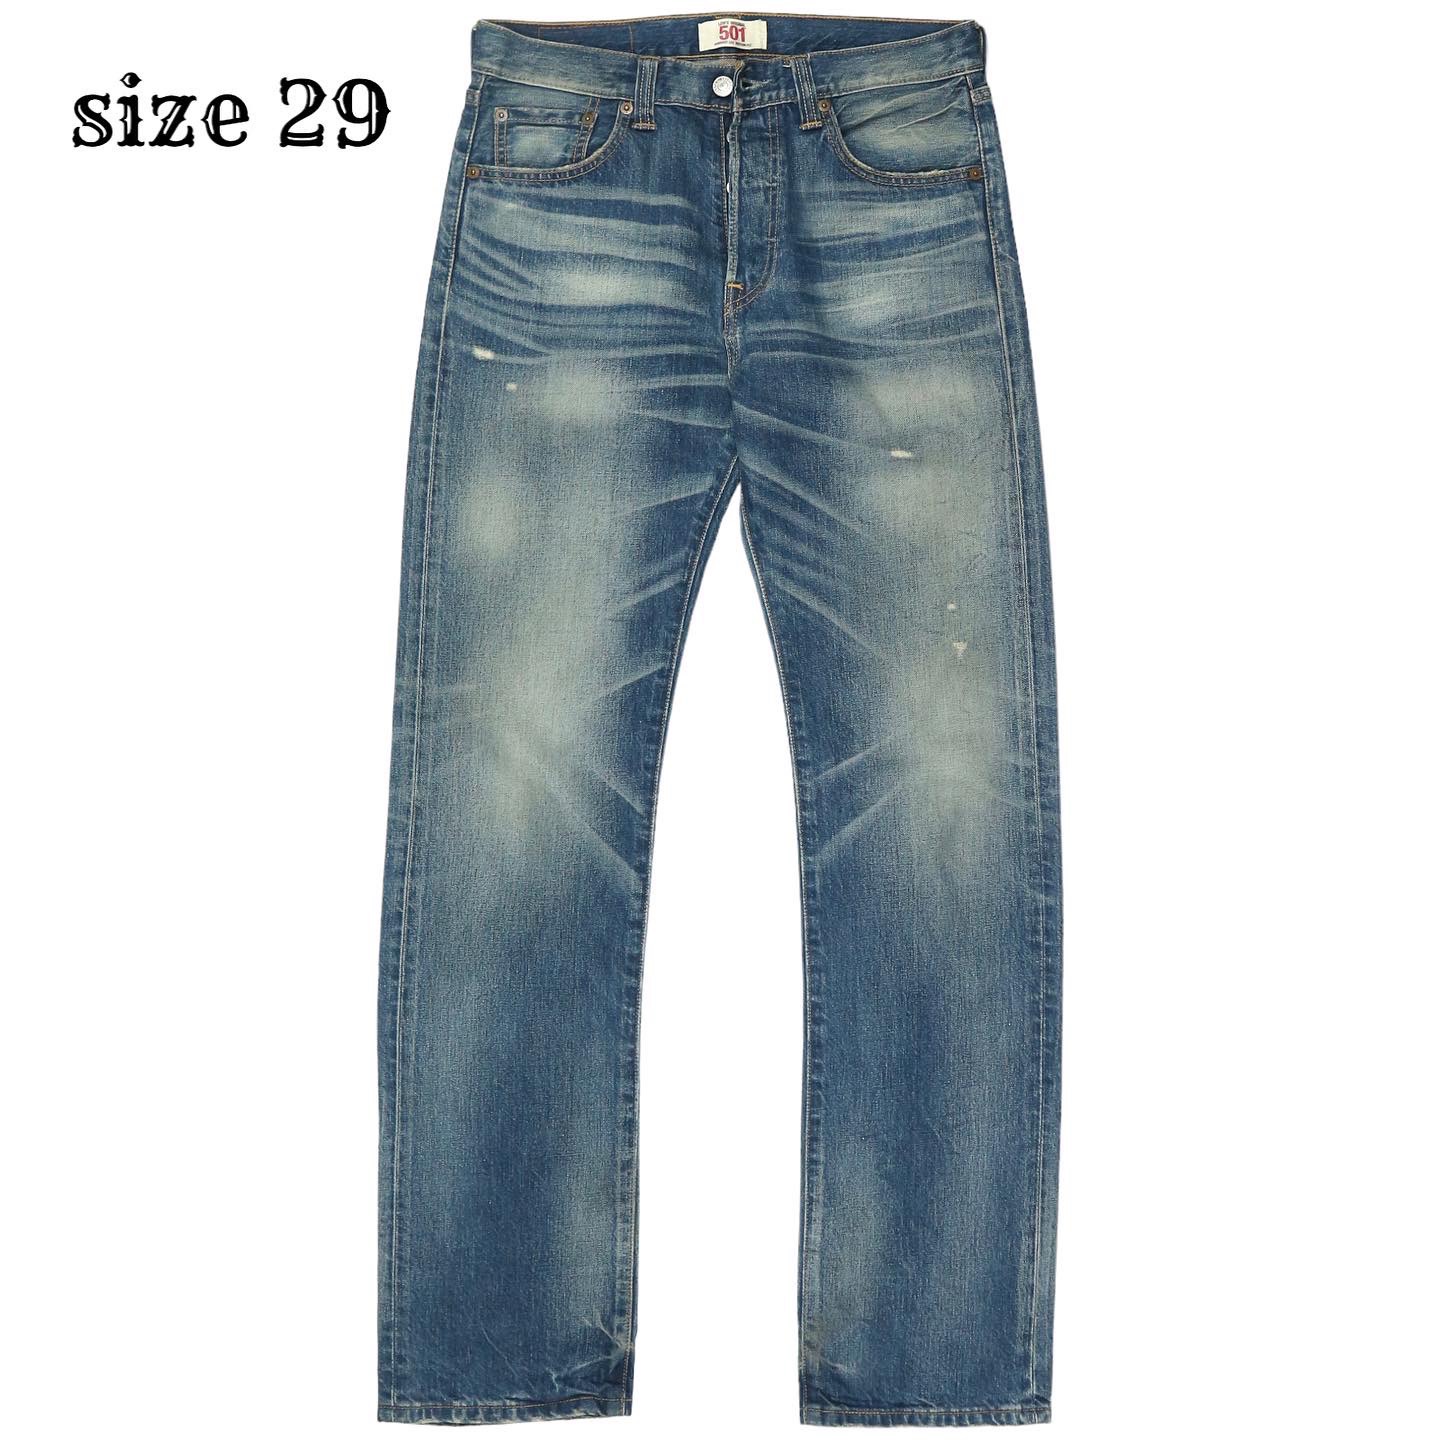 Levi’s 501 Denim Jeans Size 29